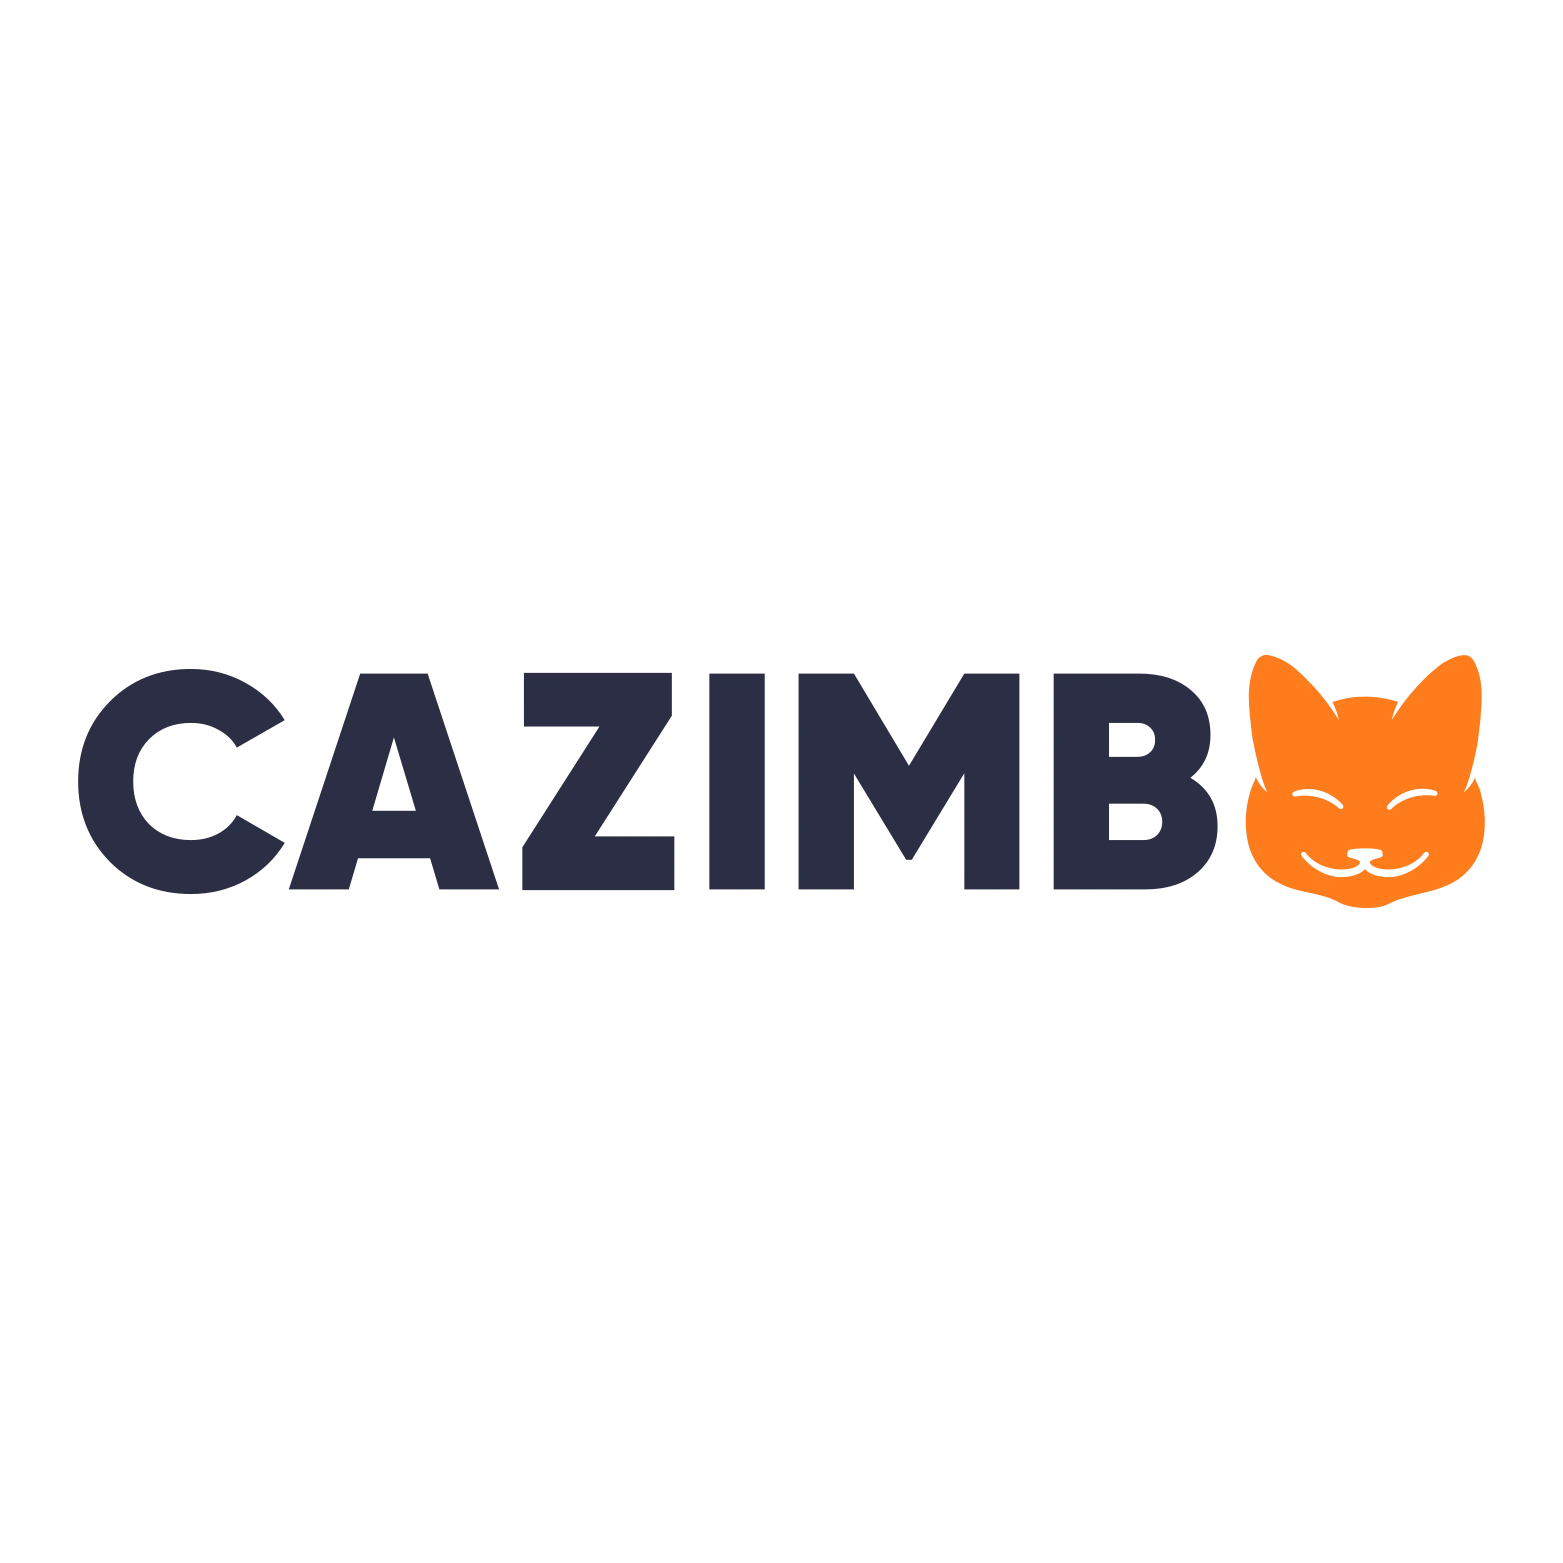 Cazimbo Casino logo